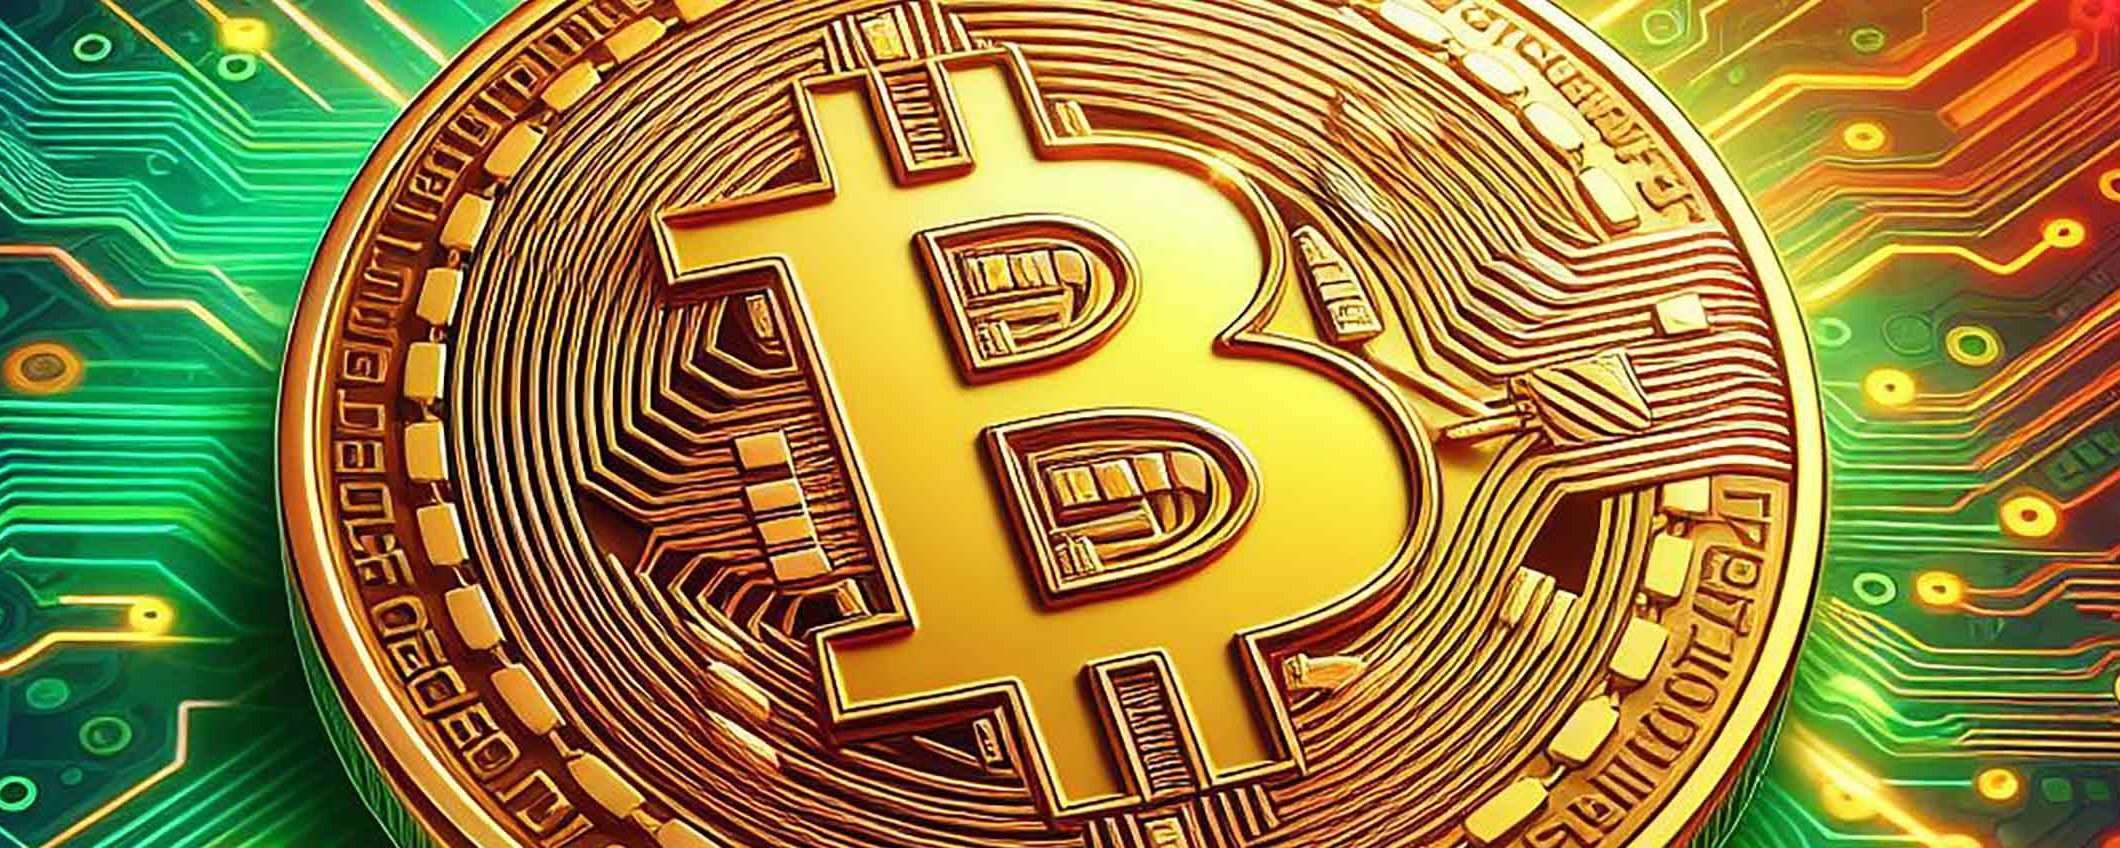 Bitcoin ha guadagnato l'8% nell'ultima settimana